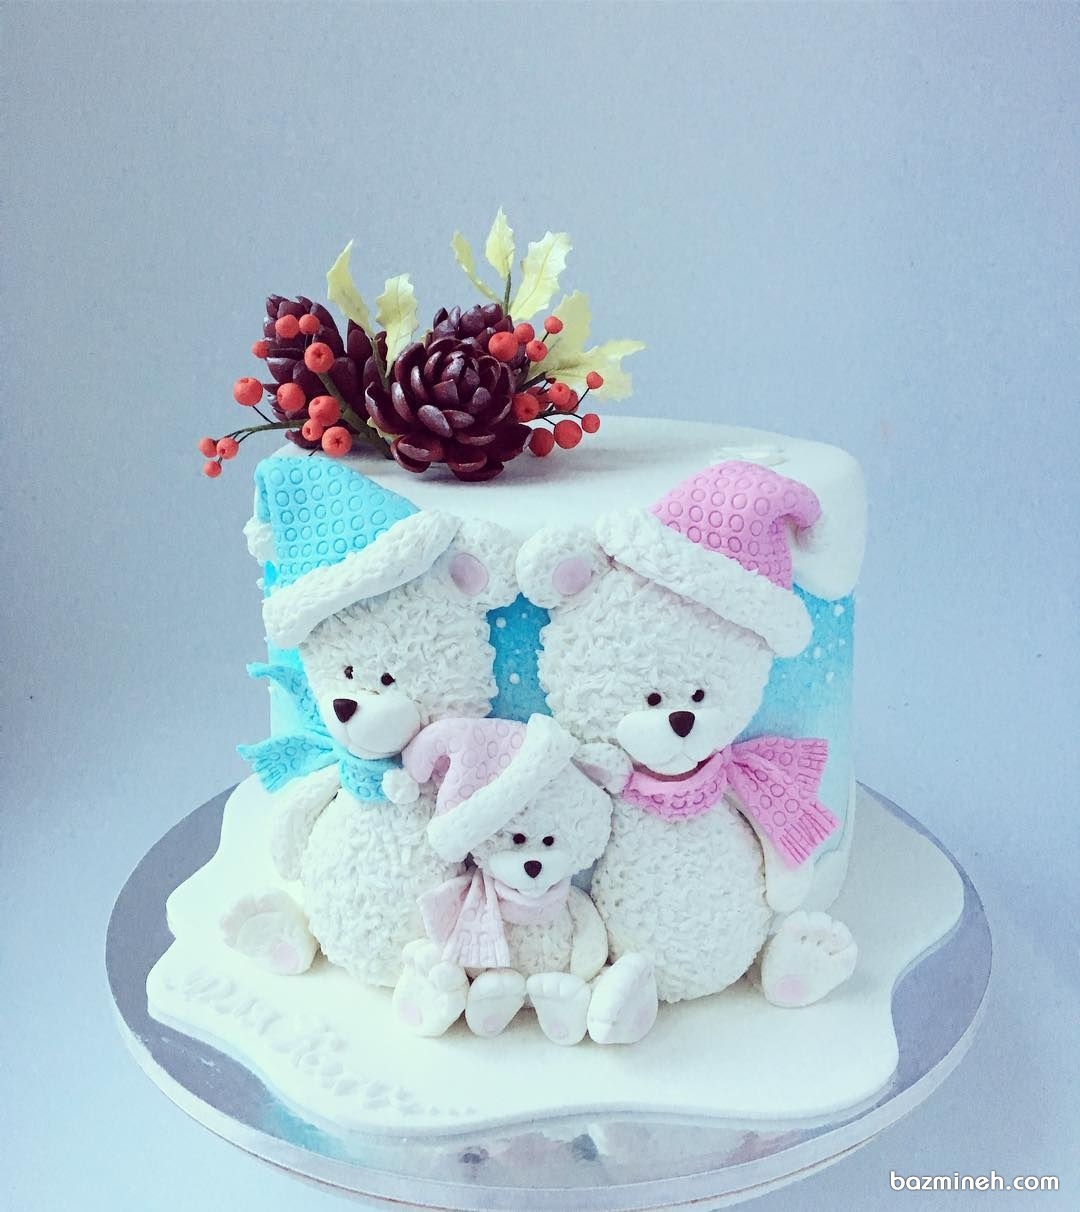 کیک جشن تولد کودک با تم زمستانی